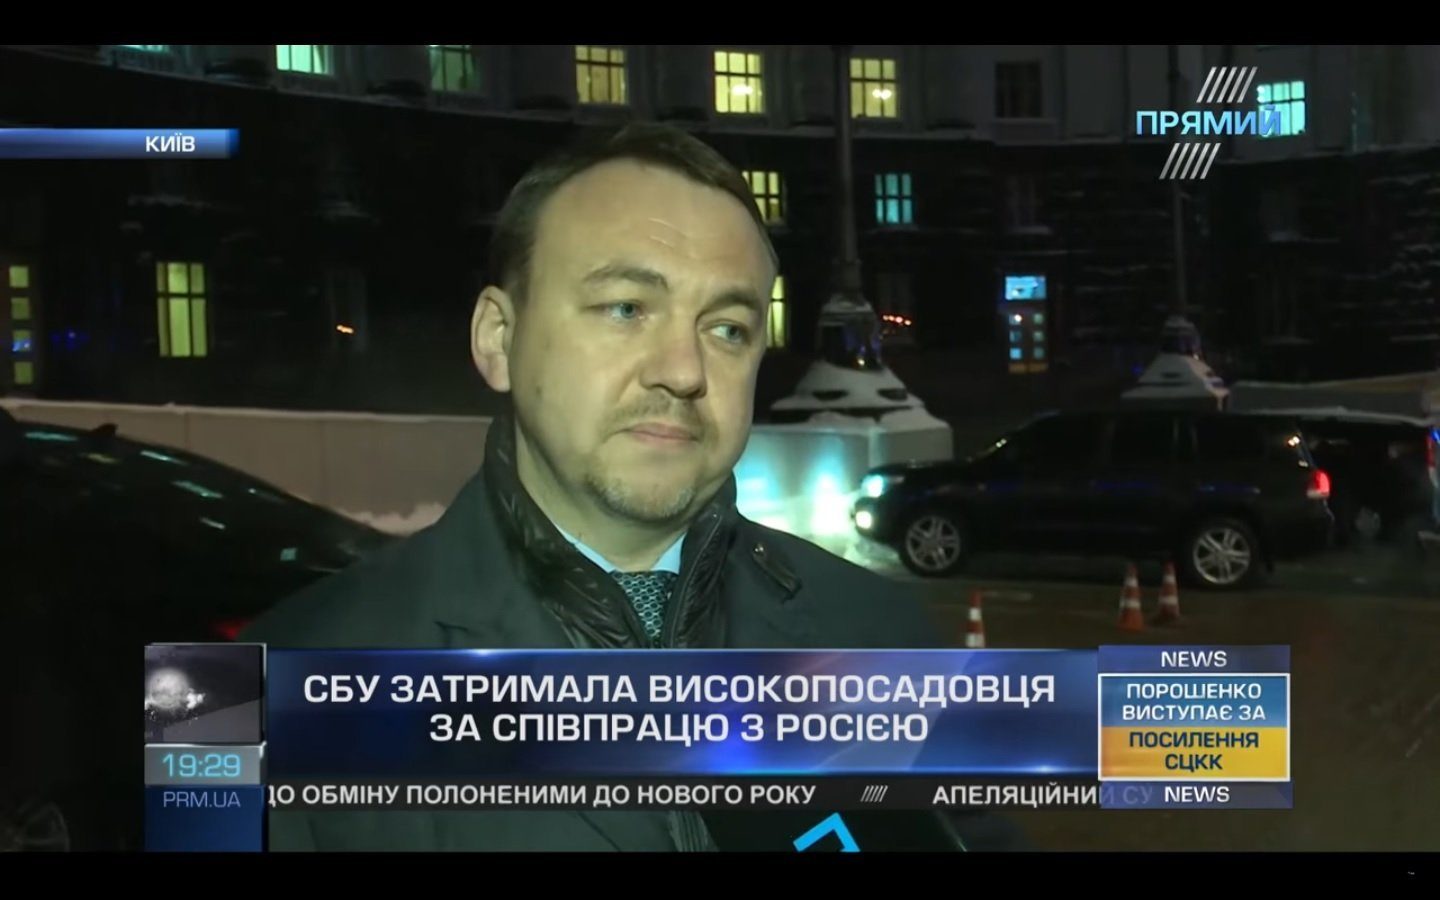 Alexei Petrov Ukraine Counterintelligence Security Service